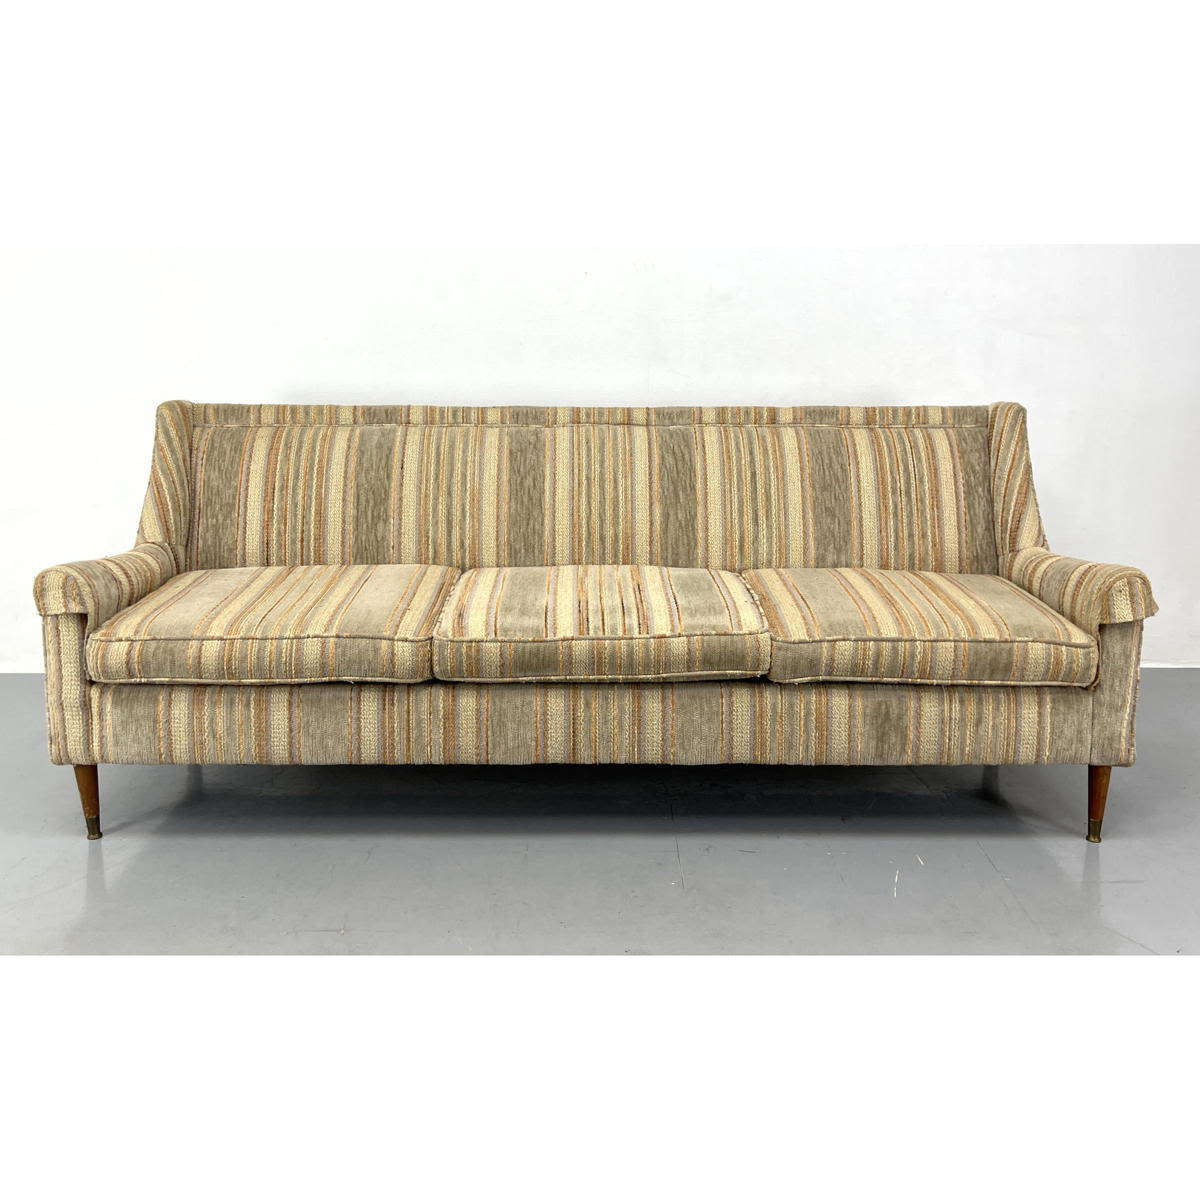 7 ft Upholstered Modernist Sofa